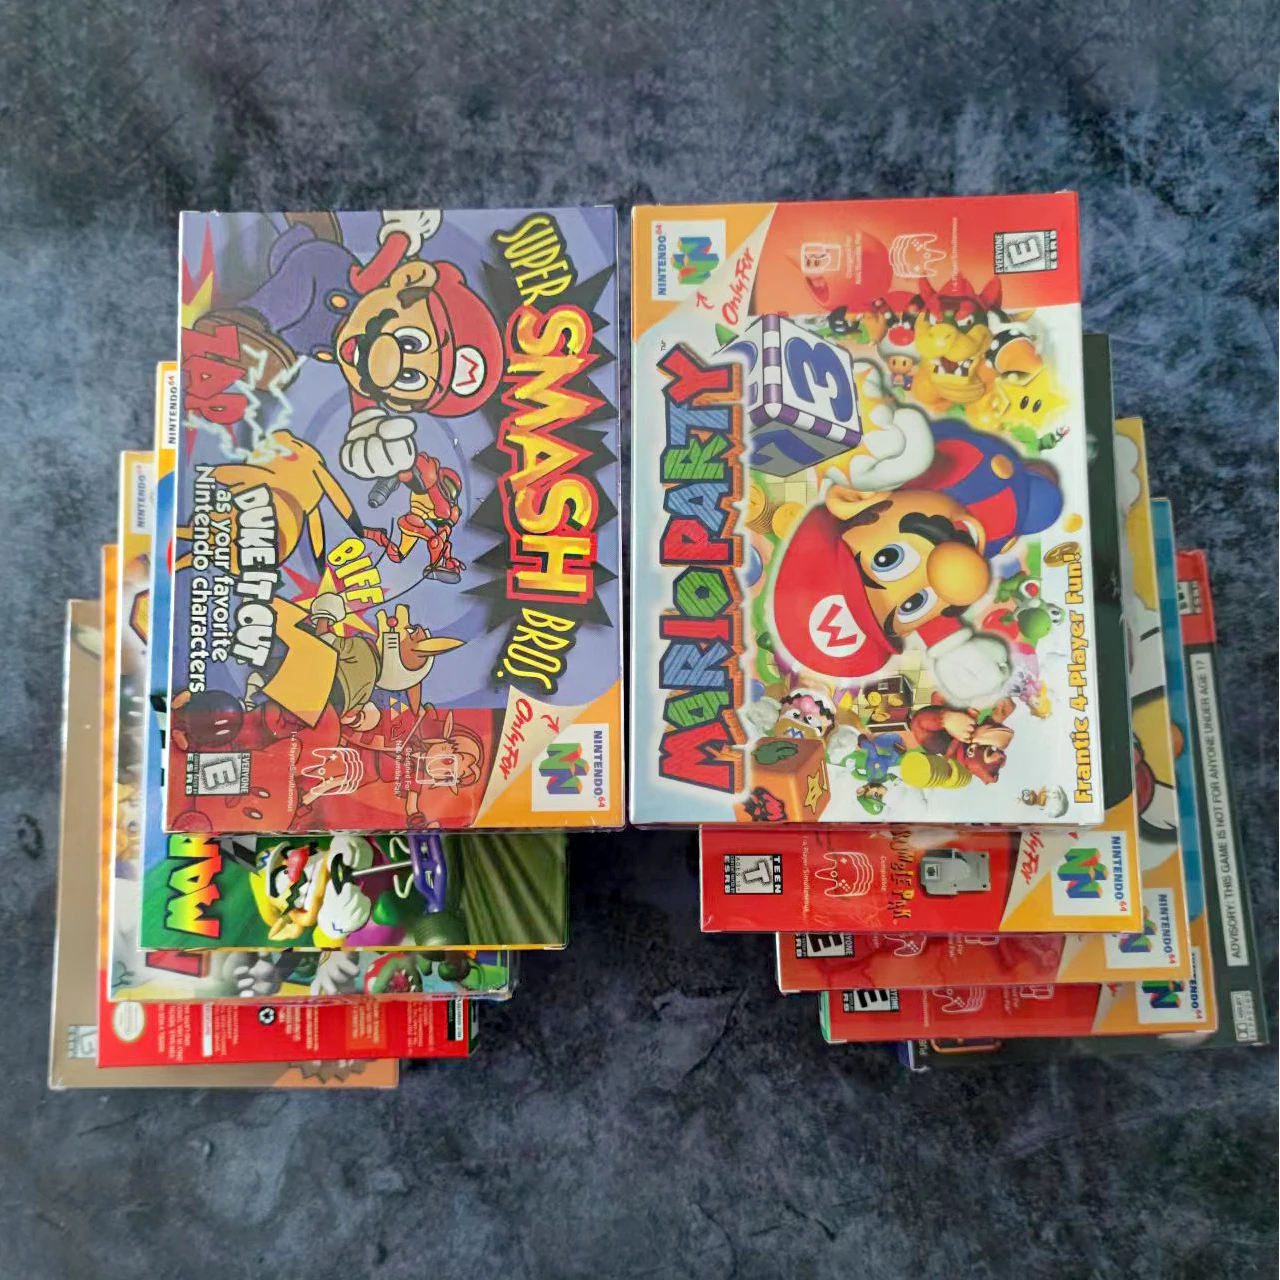 USA Version English Language Retro Video Games Cards  mario pokmon zelda with box 16 bit game cartridge for N64 game cartridge